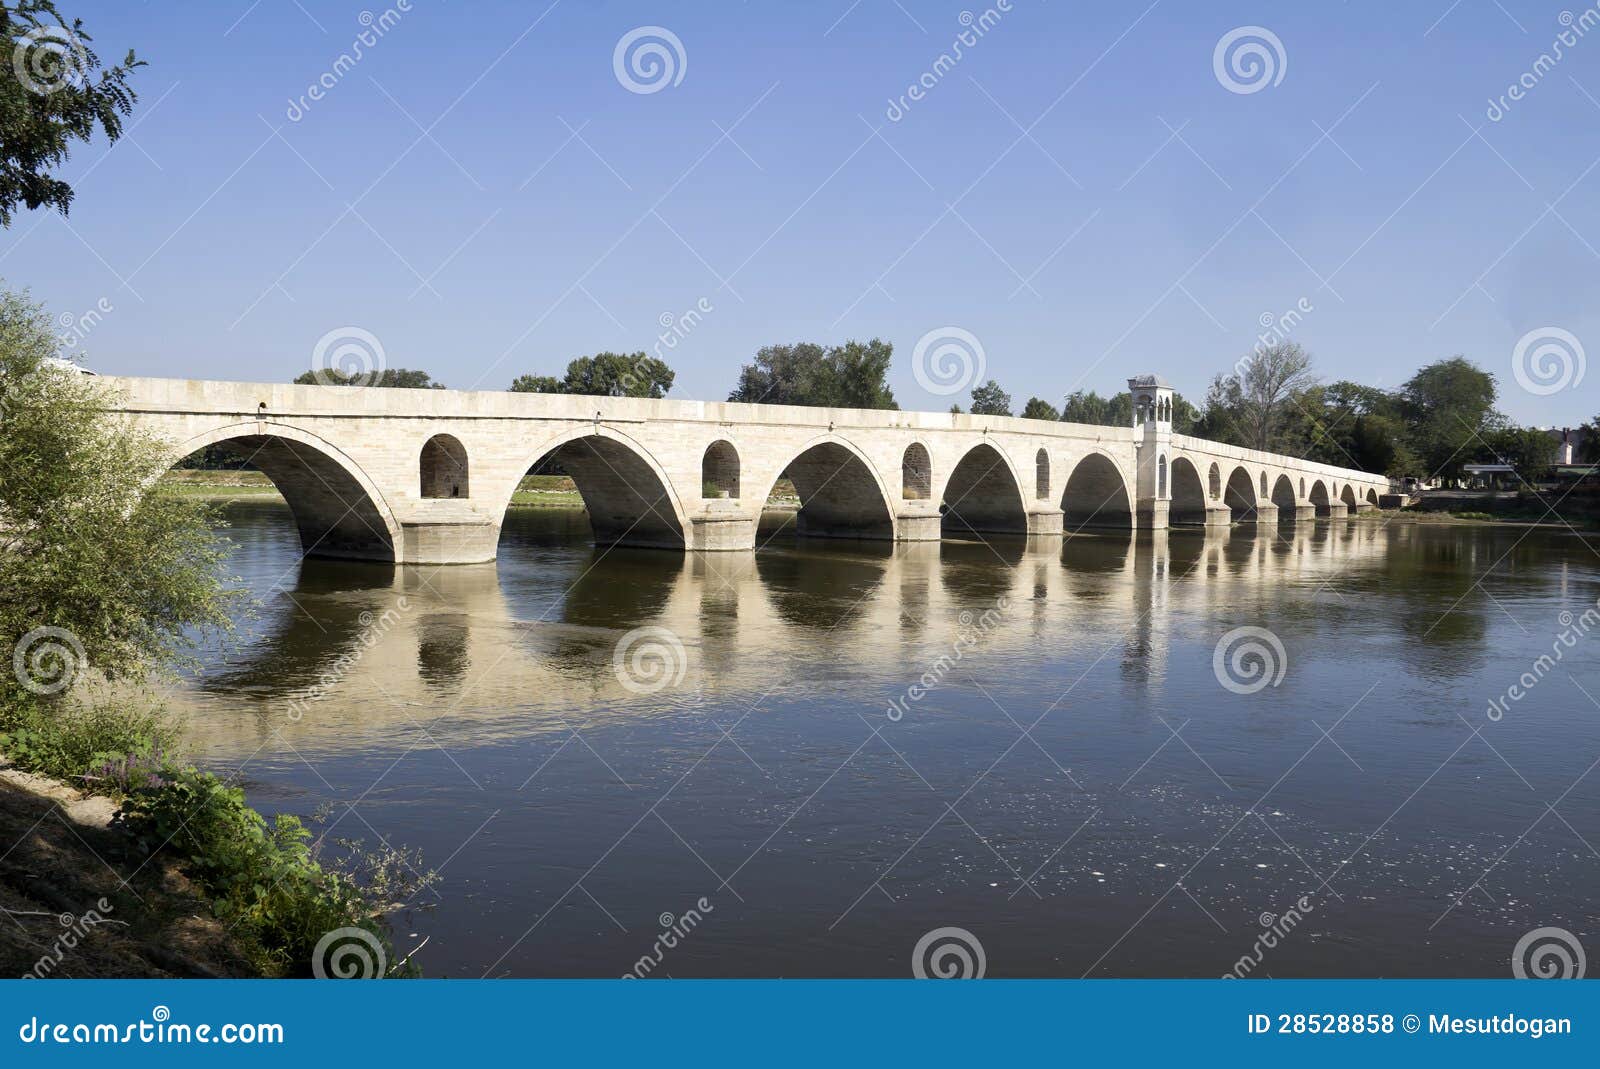 bridge in edirne